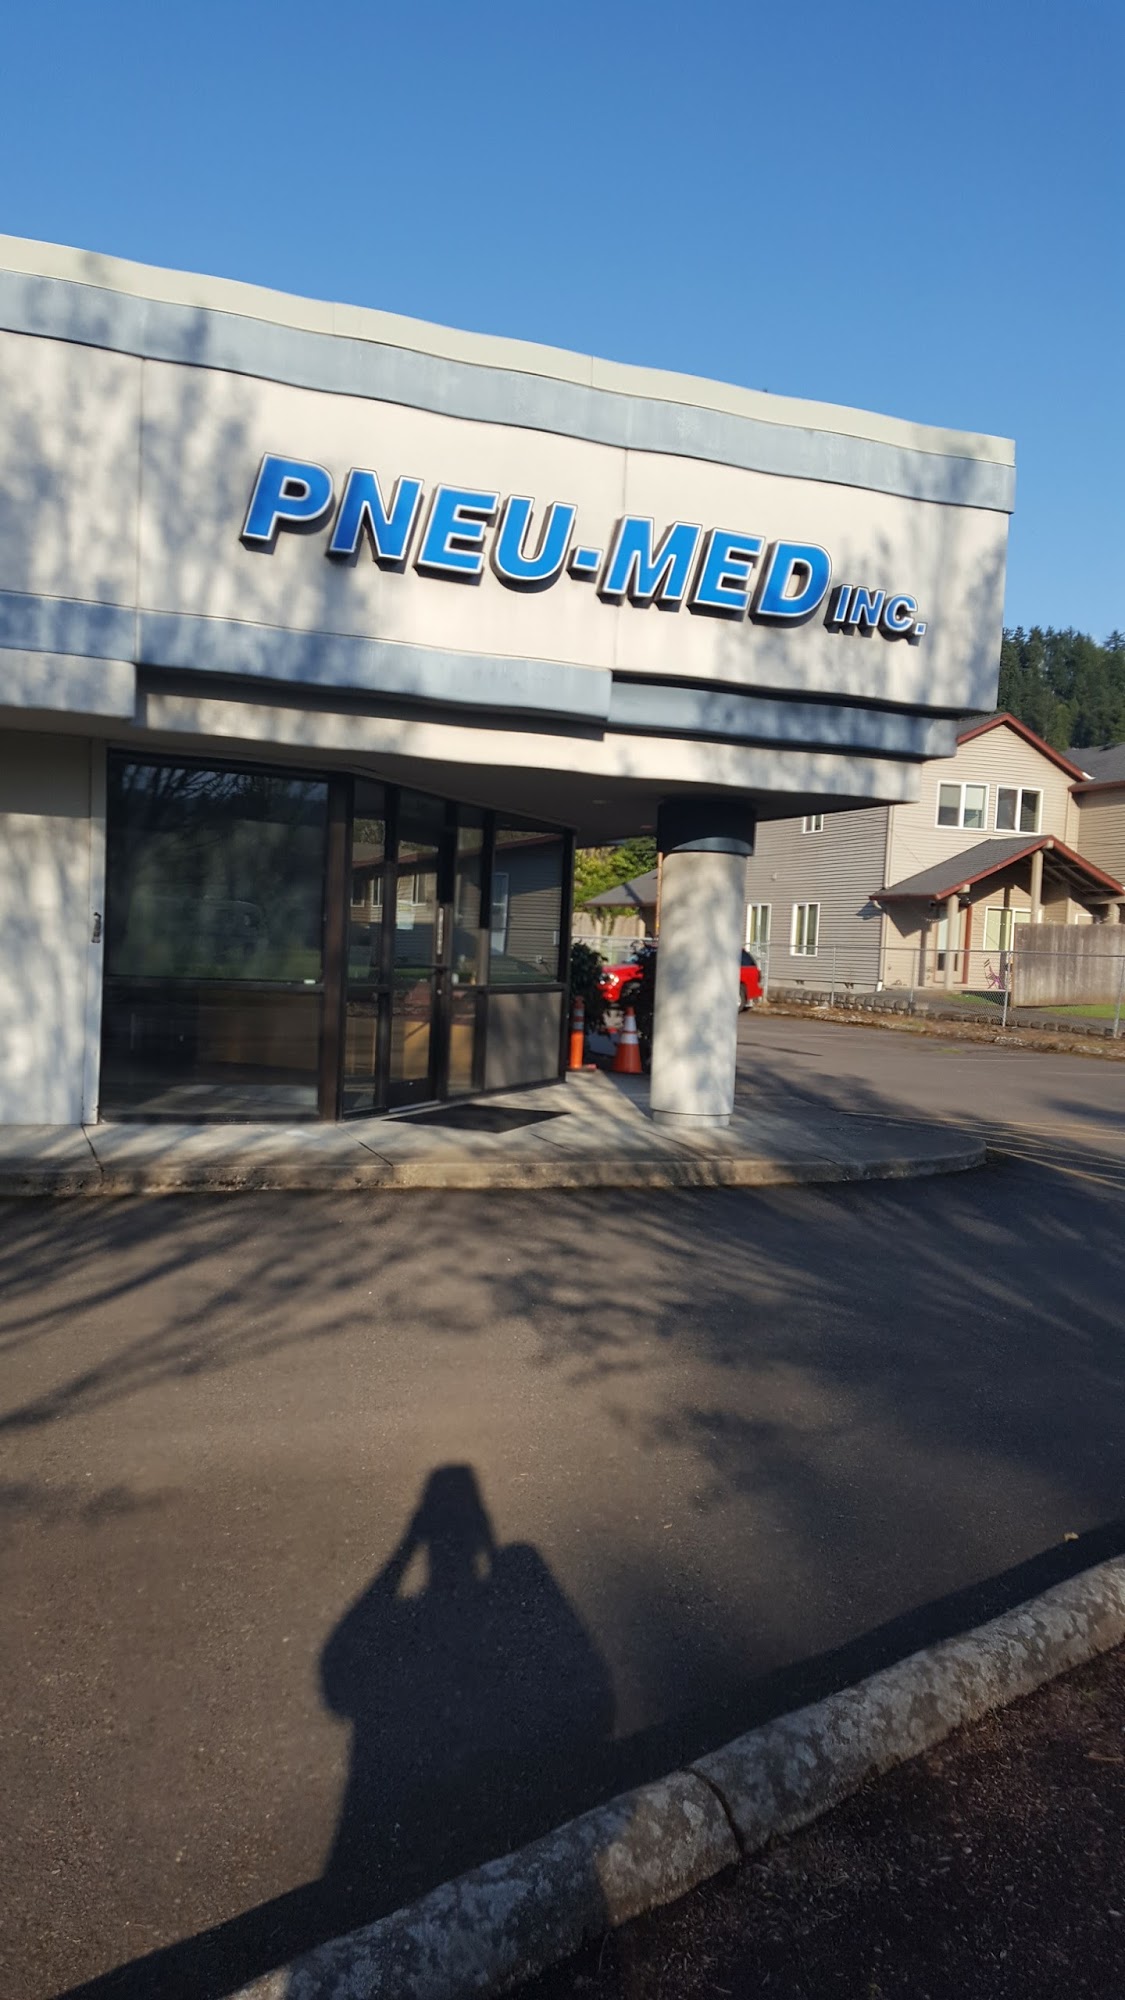 Pneu-Med Inc